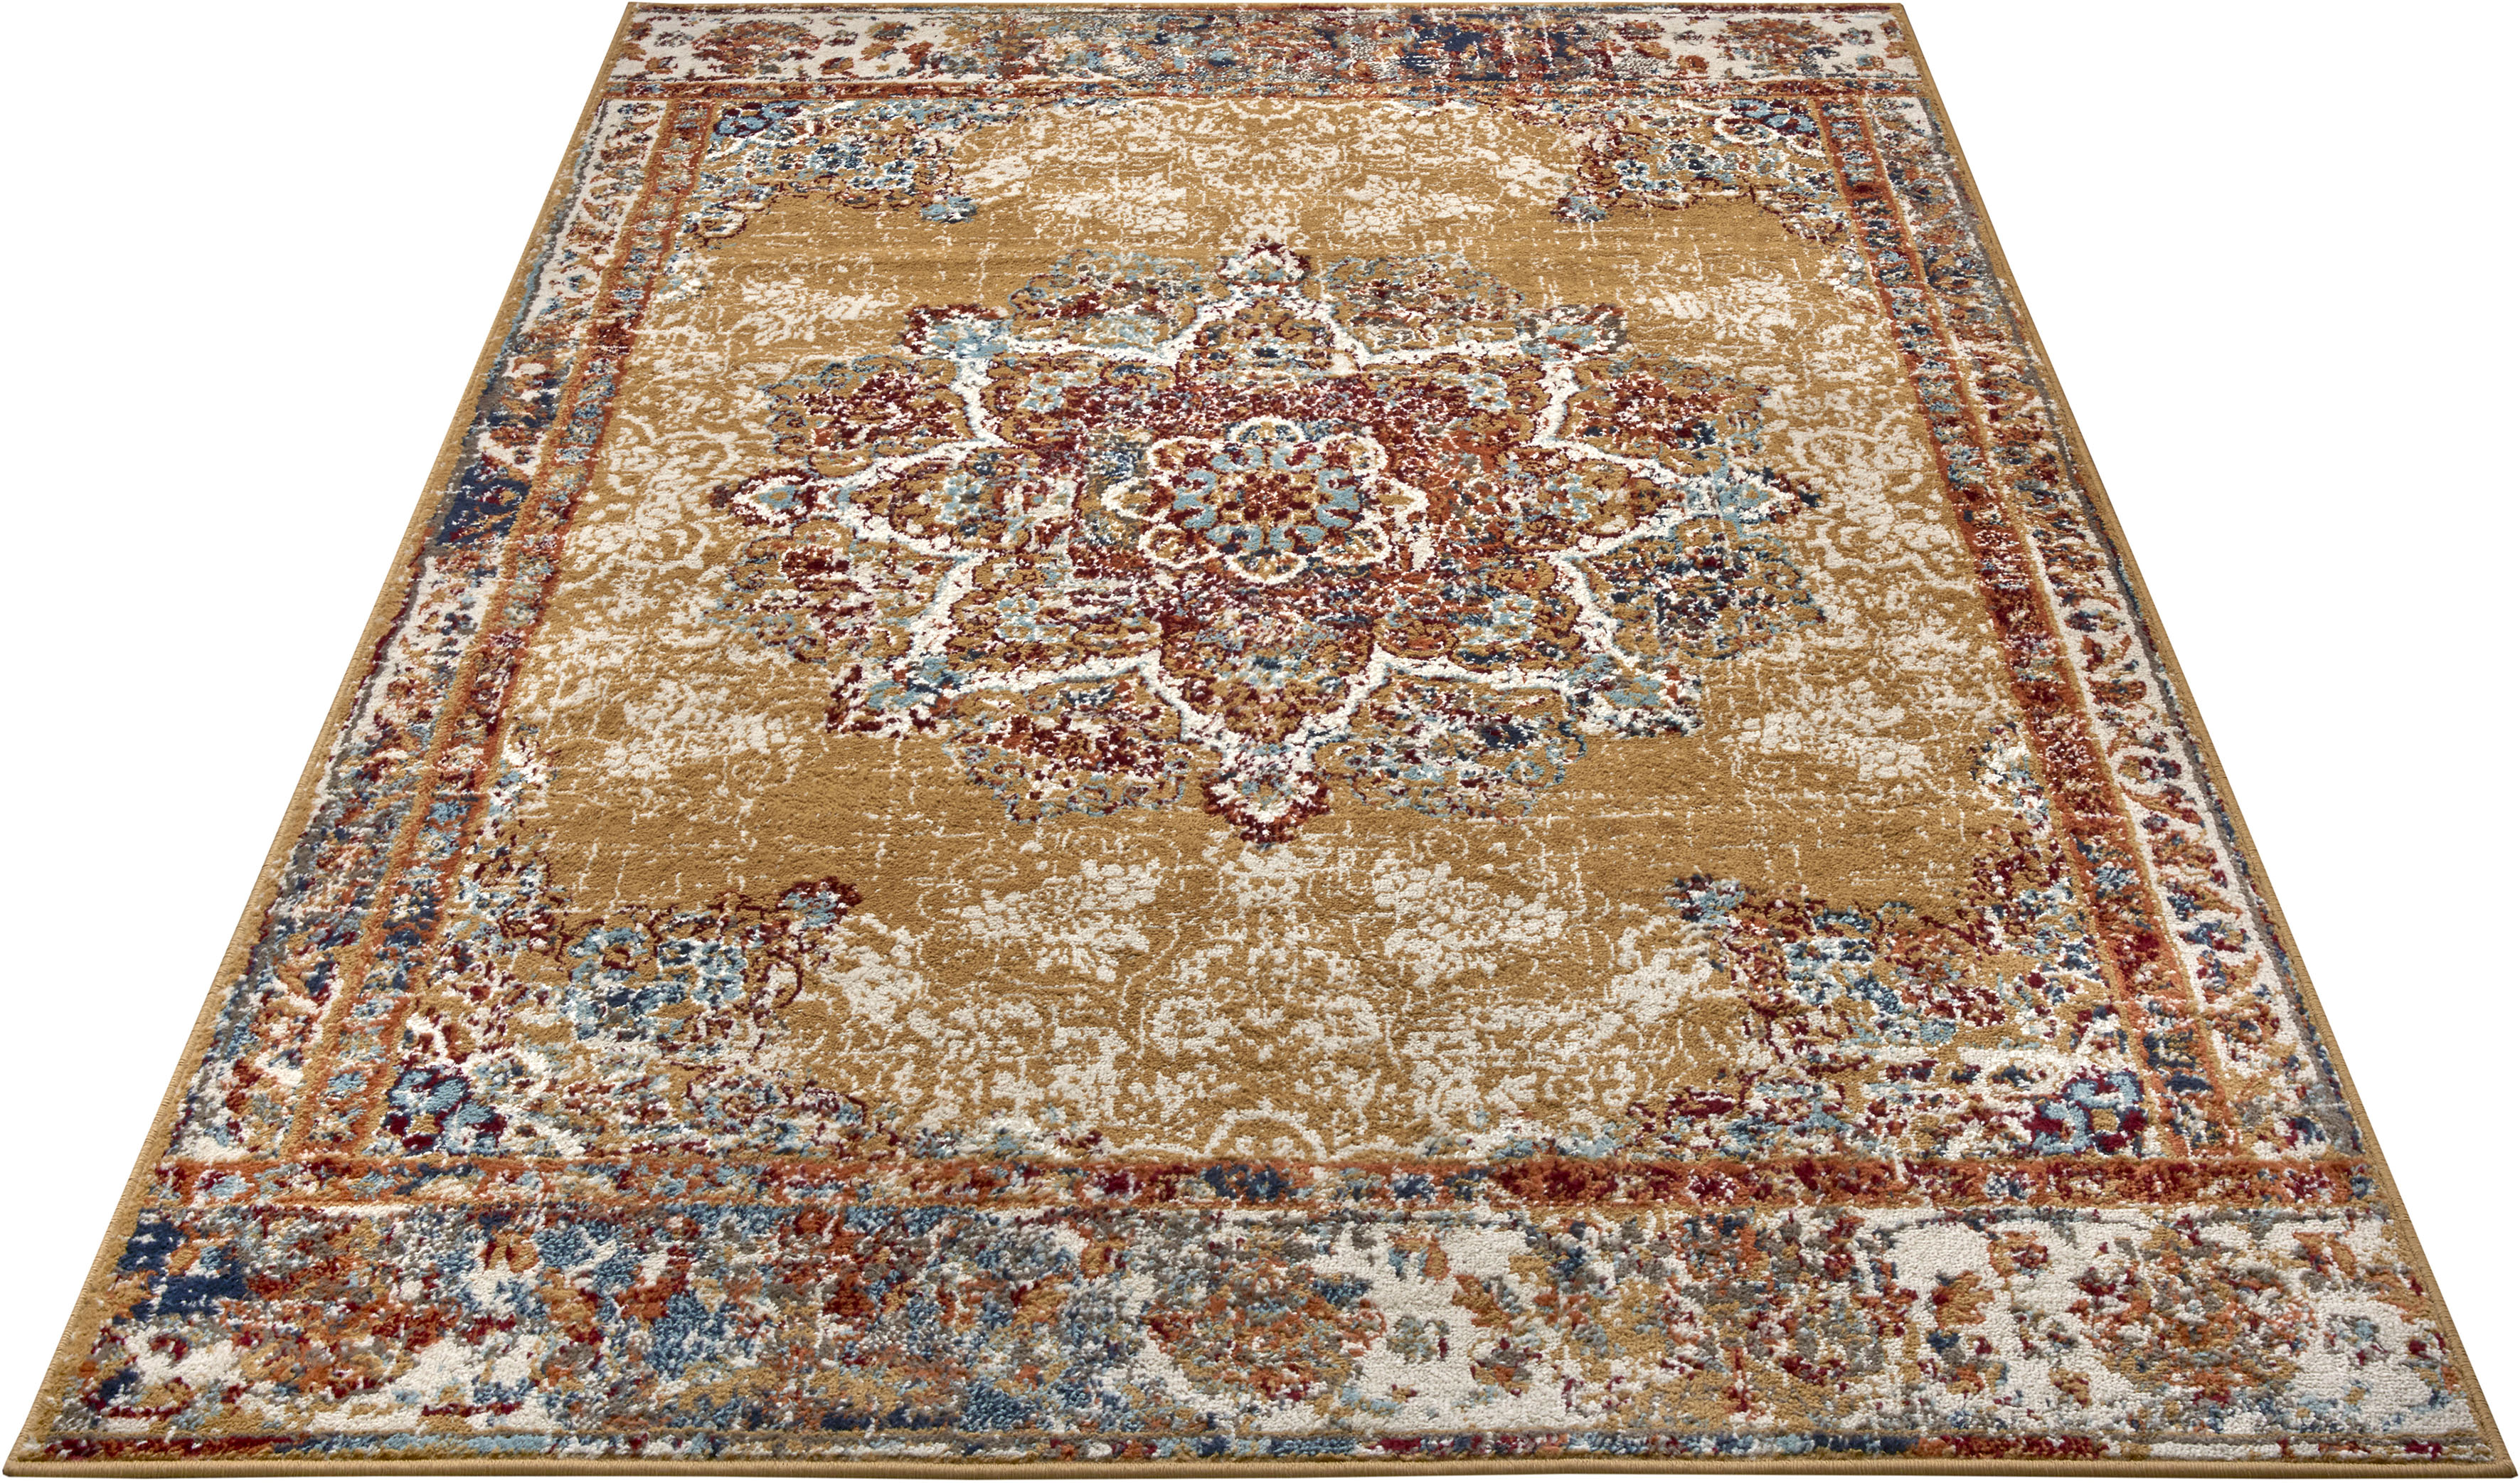 HANSE Home Teppich »Maderno«, rechteckig, Orientalisch, Orient, Kurzflor, W günstig online kaufen